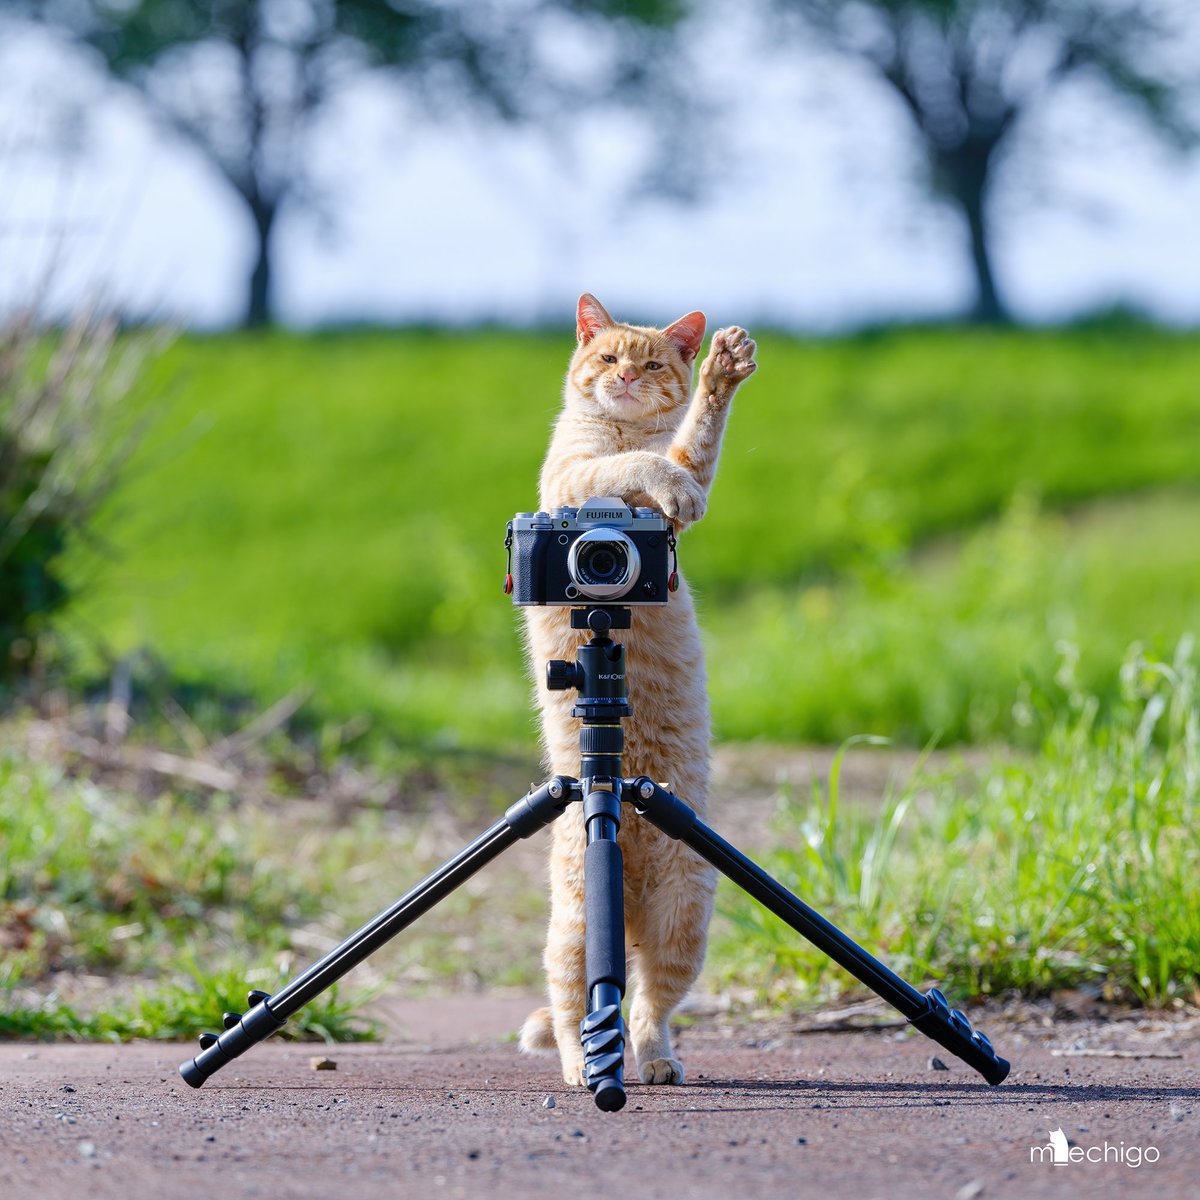 カメラにゃん茶トラ。
静岡の猫写真展で等身大パネルにした一枚。